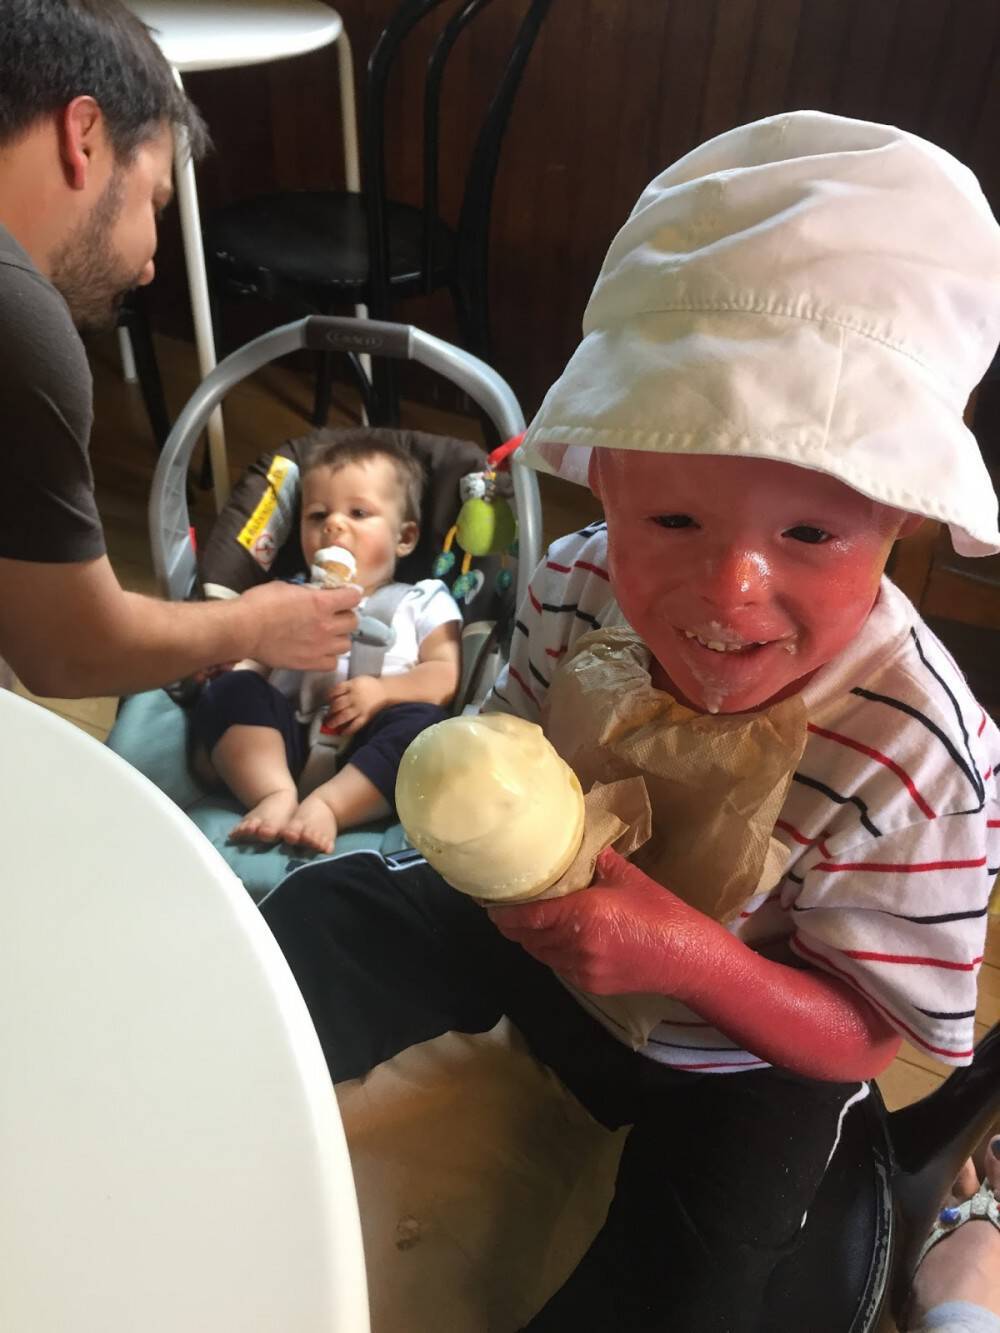 Μωρό γεννιέται με το κορμάκι του καλυμμένο με παχιά λευκά «λέπια». 5 χρόνια μετά, οι γιατροί δεν έχουν ξαναδει πρόσωπο σαν το δικό του.